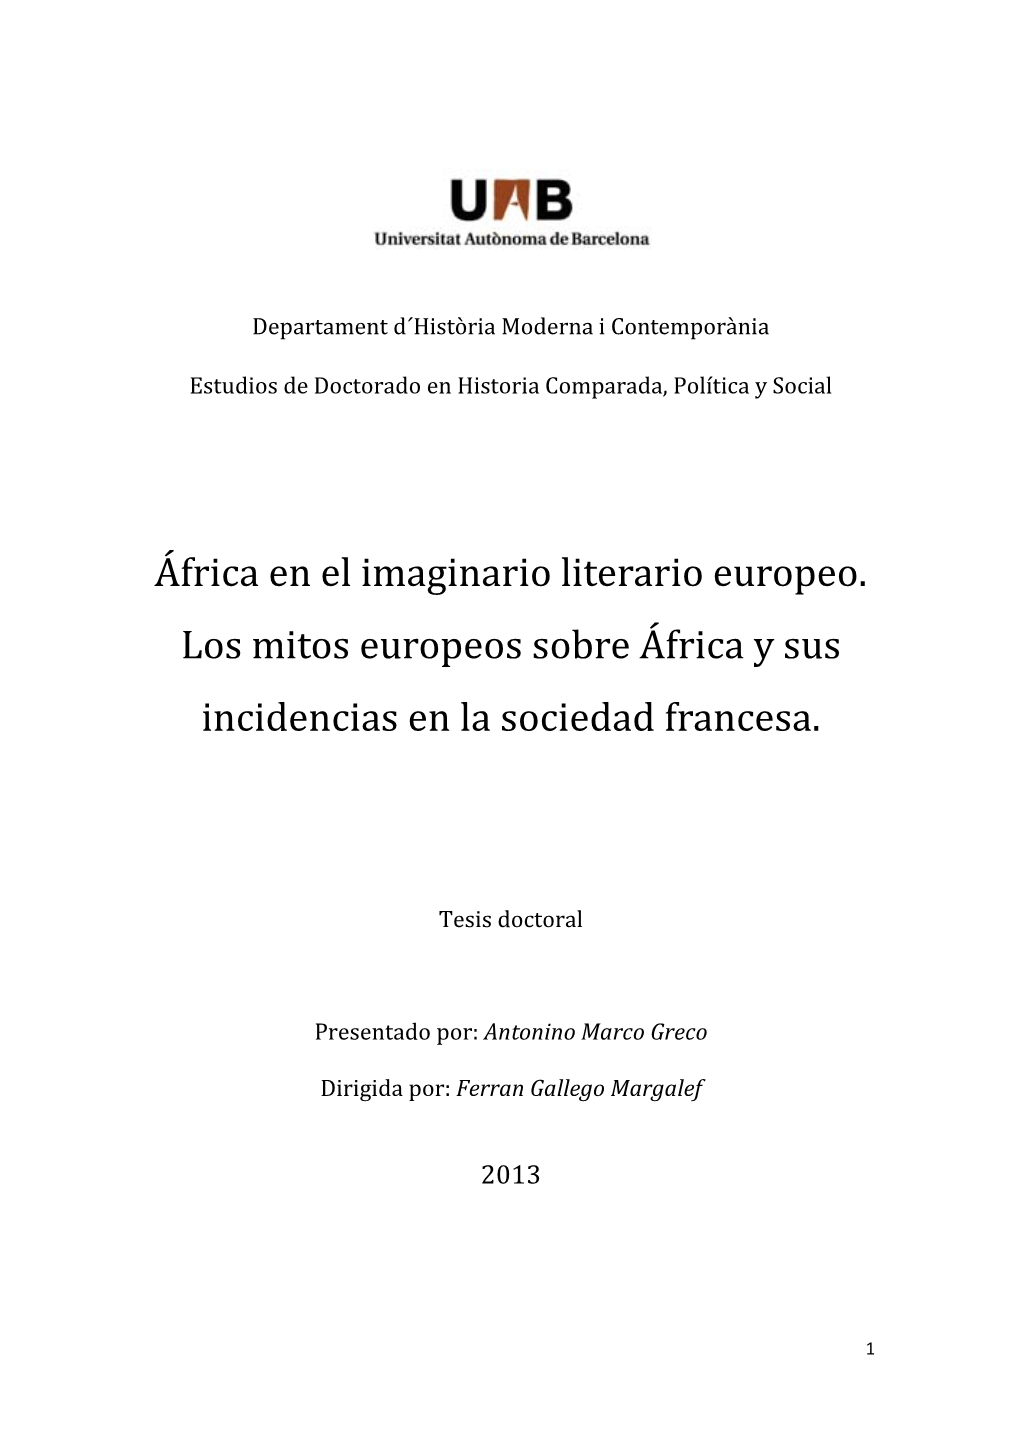 África En El Imaginario Literario Europeo. Los Mitos Europeos Sobre África Y Sus Incidencias En La Sociedad Francesa